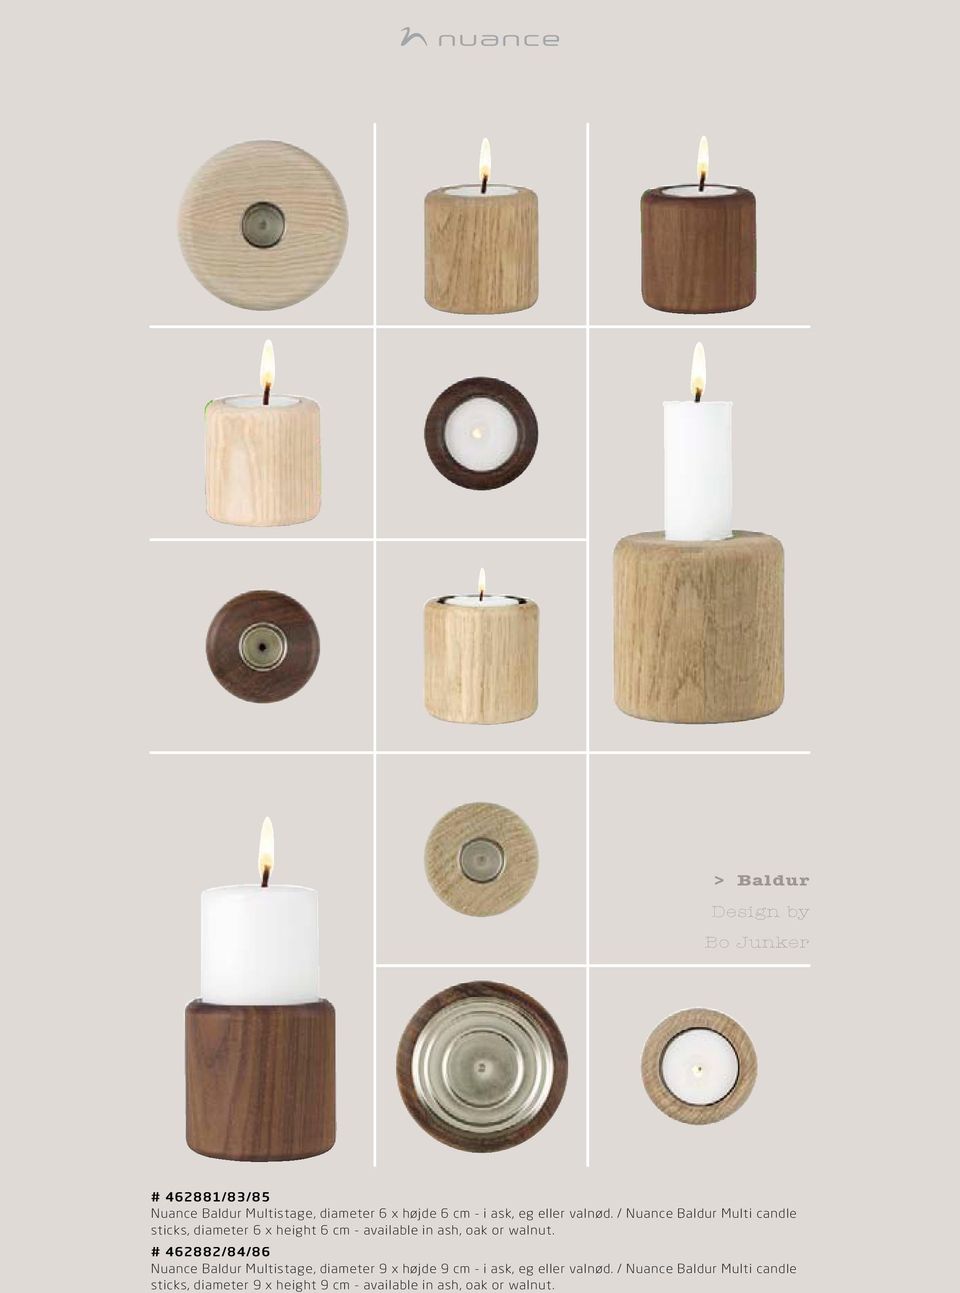 / Nuance Baldur Multi candle sticks, diameter 6 x height 6 cm - available in ash, oak or walnut.